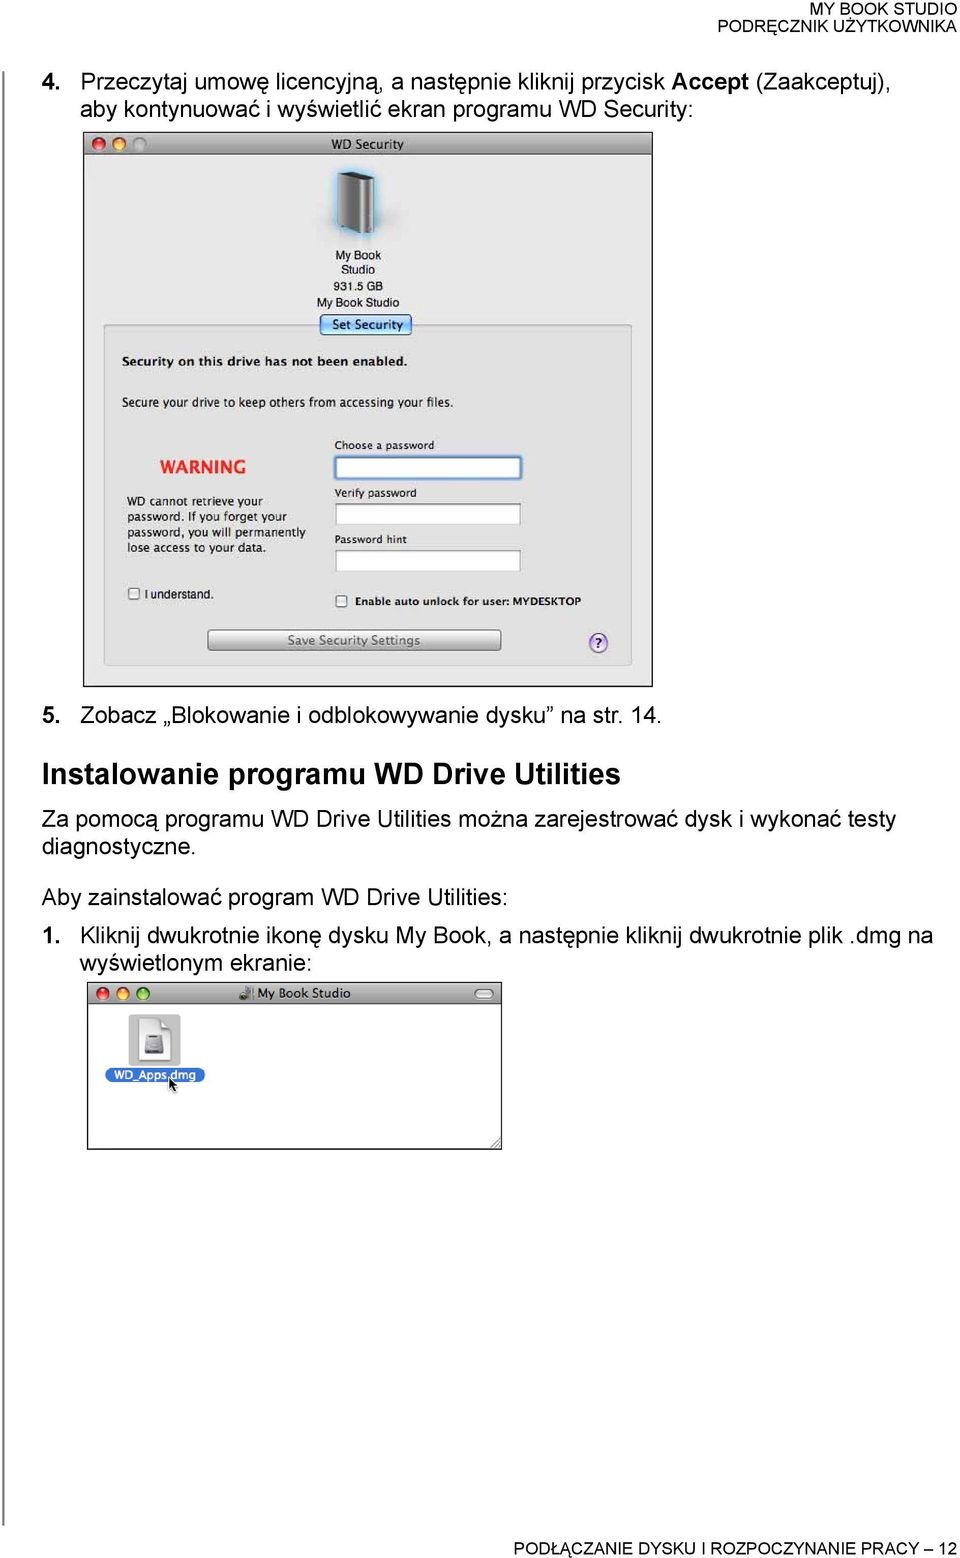 Instalowanie programu WD Drive Utilities Za pomocą programu WD Drive Utilities można zarejestrować dysk i wykonać testy